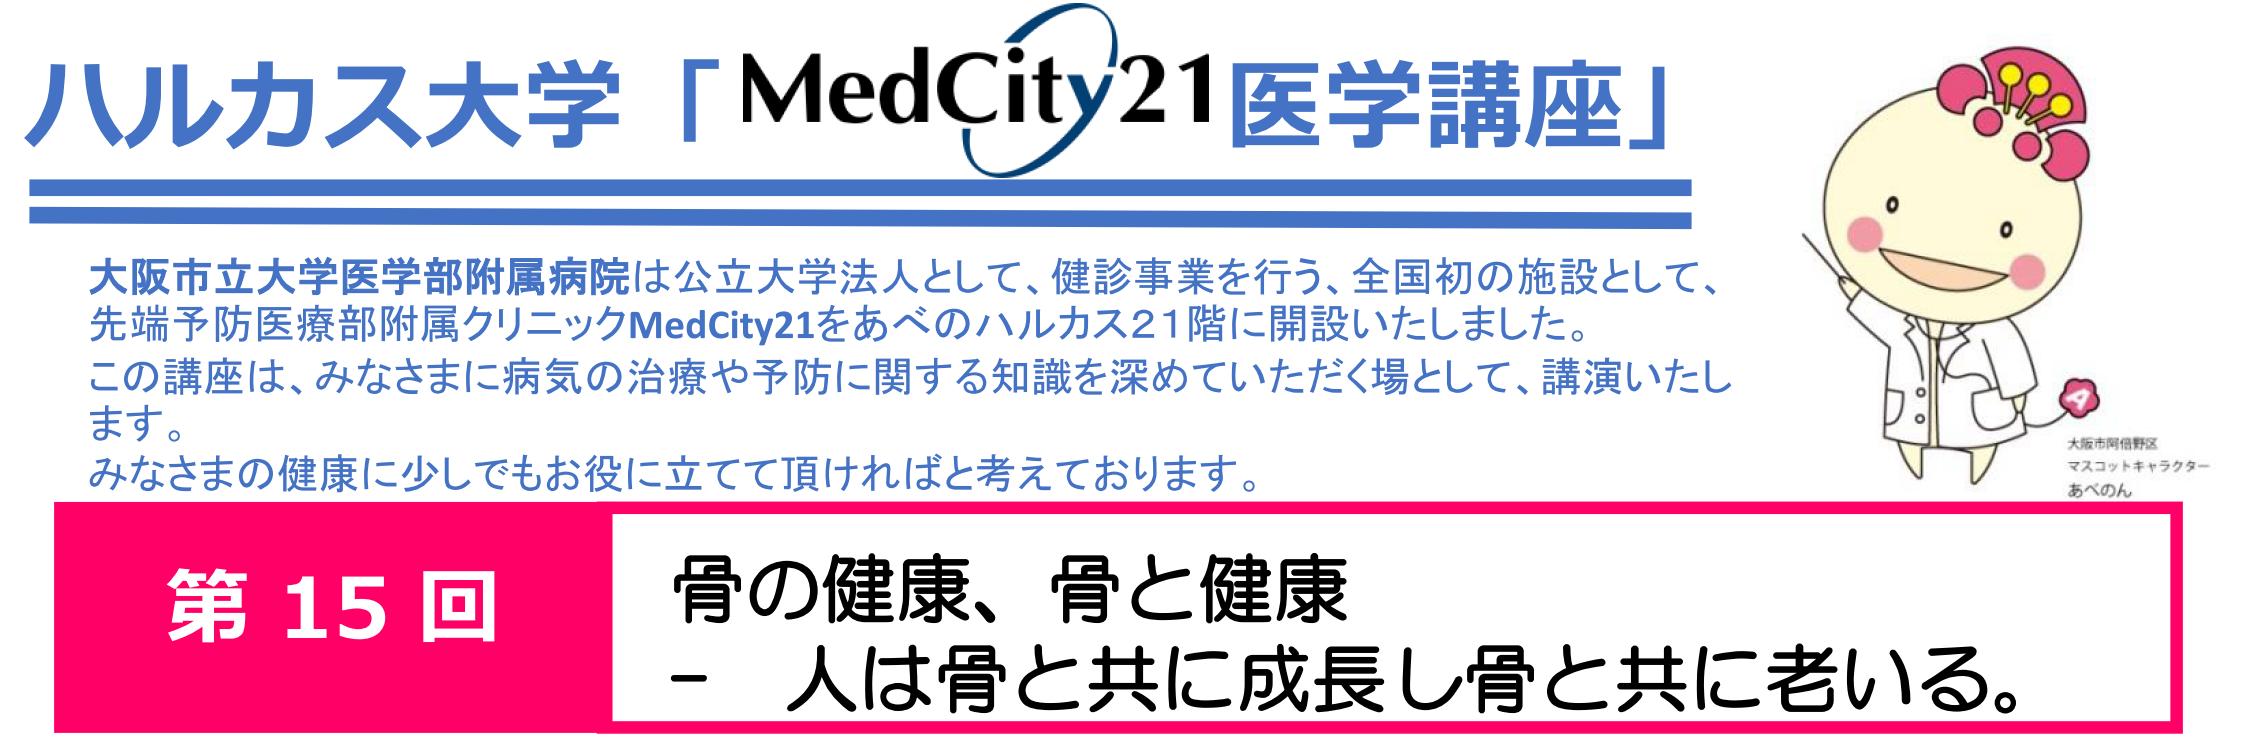 大阪市立大学医学部MedCity21医学講座